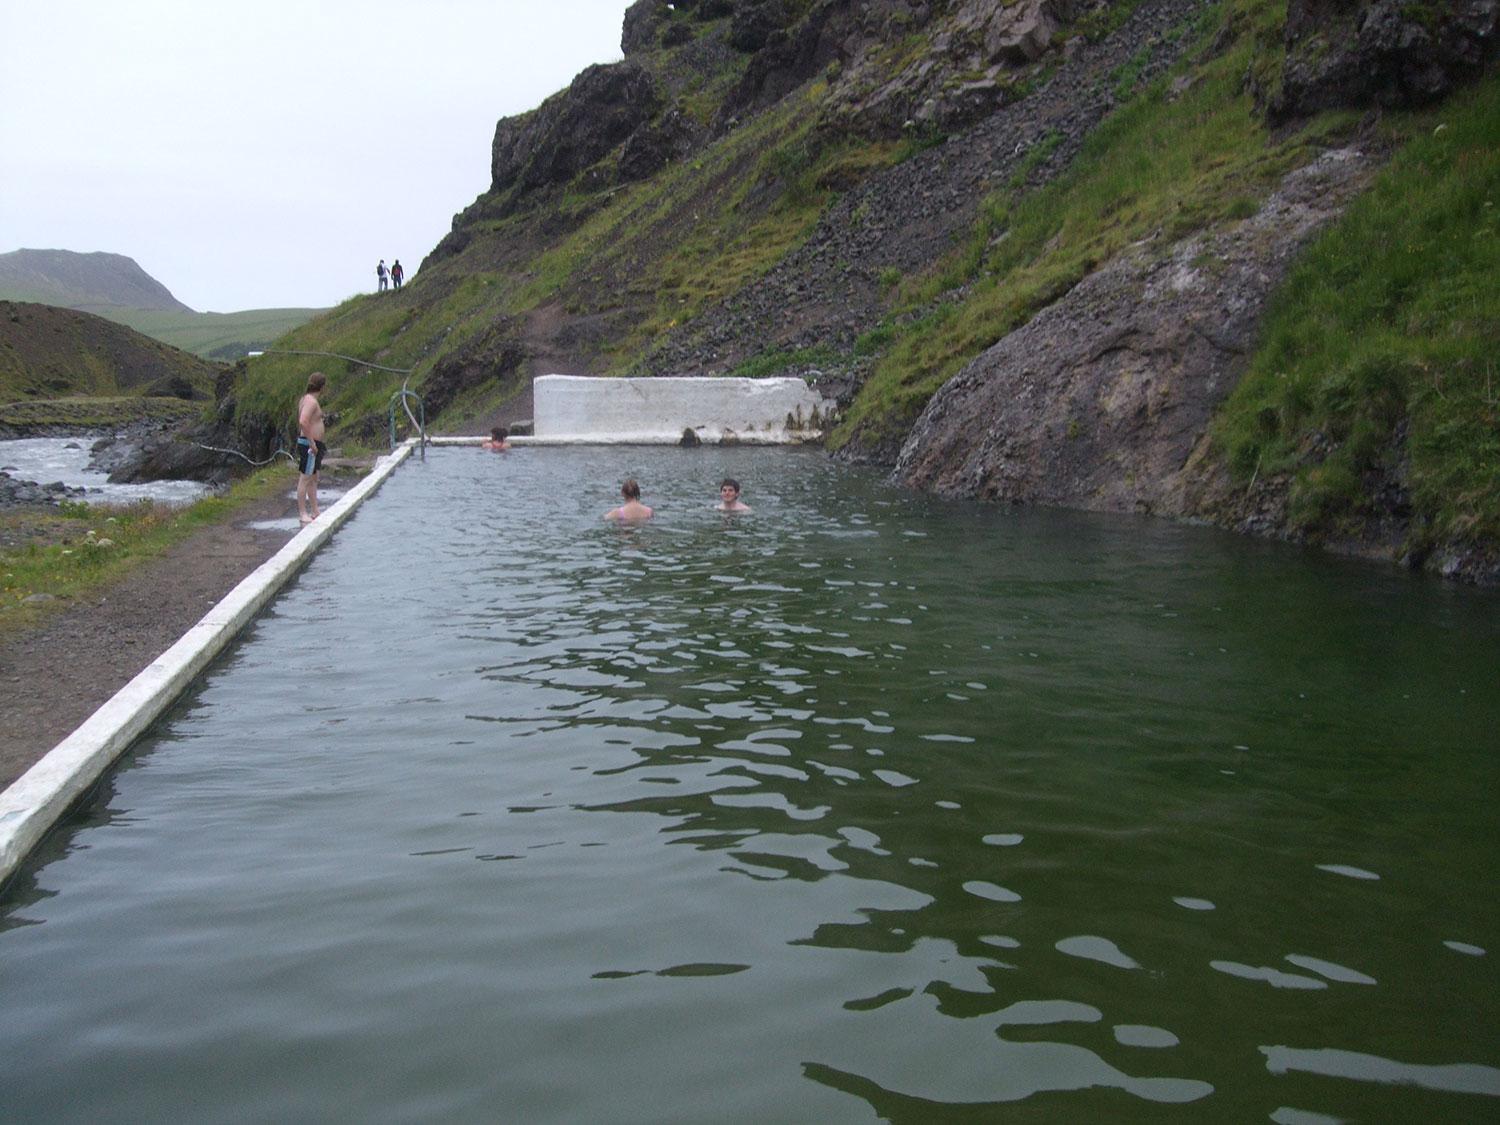 SELJAVALLALAUG, ISLAND Islands äldsta pool byggdes redan 1923 och ligge i en vacker dalgång. Någon uppvärmning av vattnet behövs inte då det kommer naturligt från varma källor. Poolen fylldes delvis av aska vid Eyjafjallajökulls stora utbrott 2010. Mer info: www.eyjafjoll.com